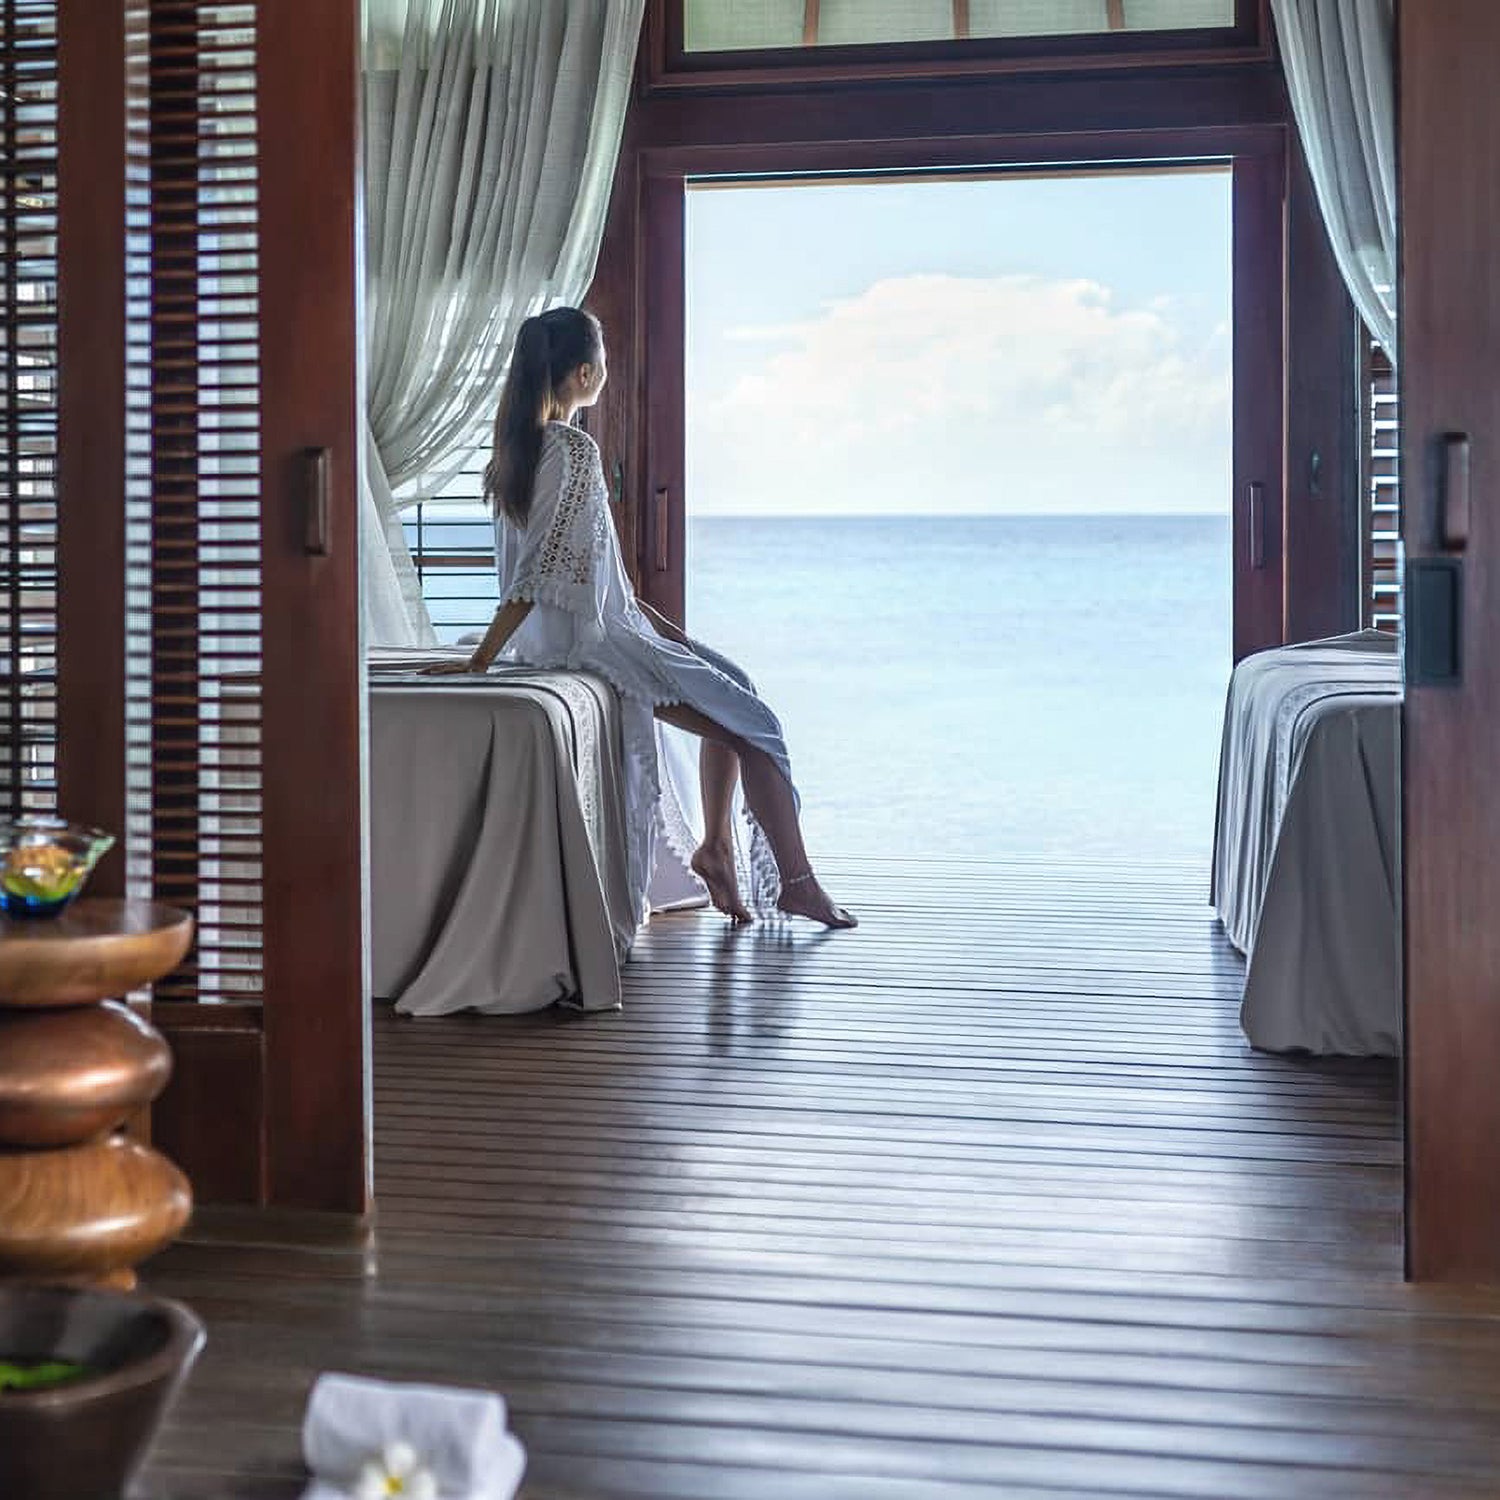 Four Seasons Resort Maldives at Landaa Giraavaru. A woman in villa looking out at the sea. Teresa Tarmey super facialist residency at Four Seasons Resort Maldives